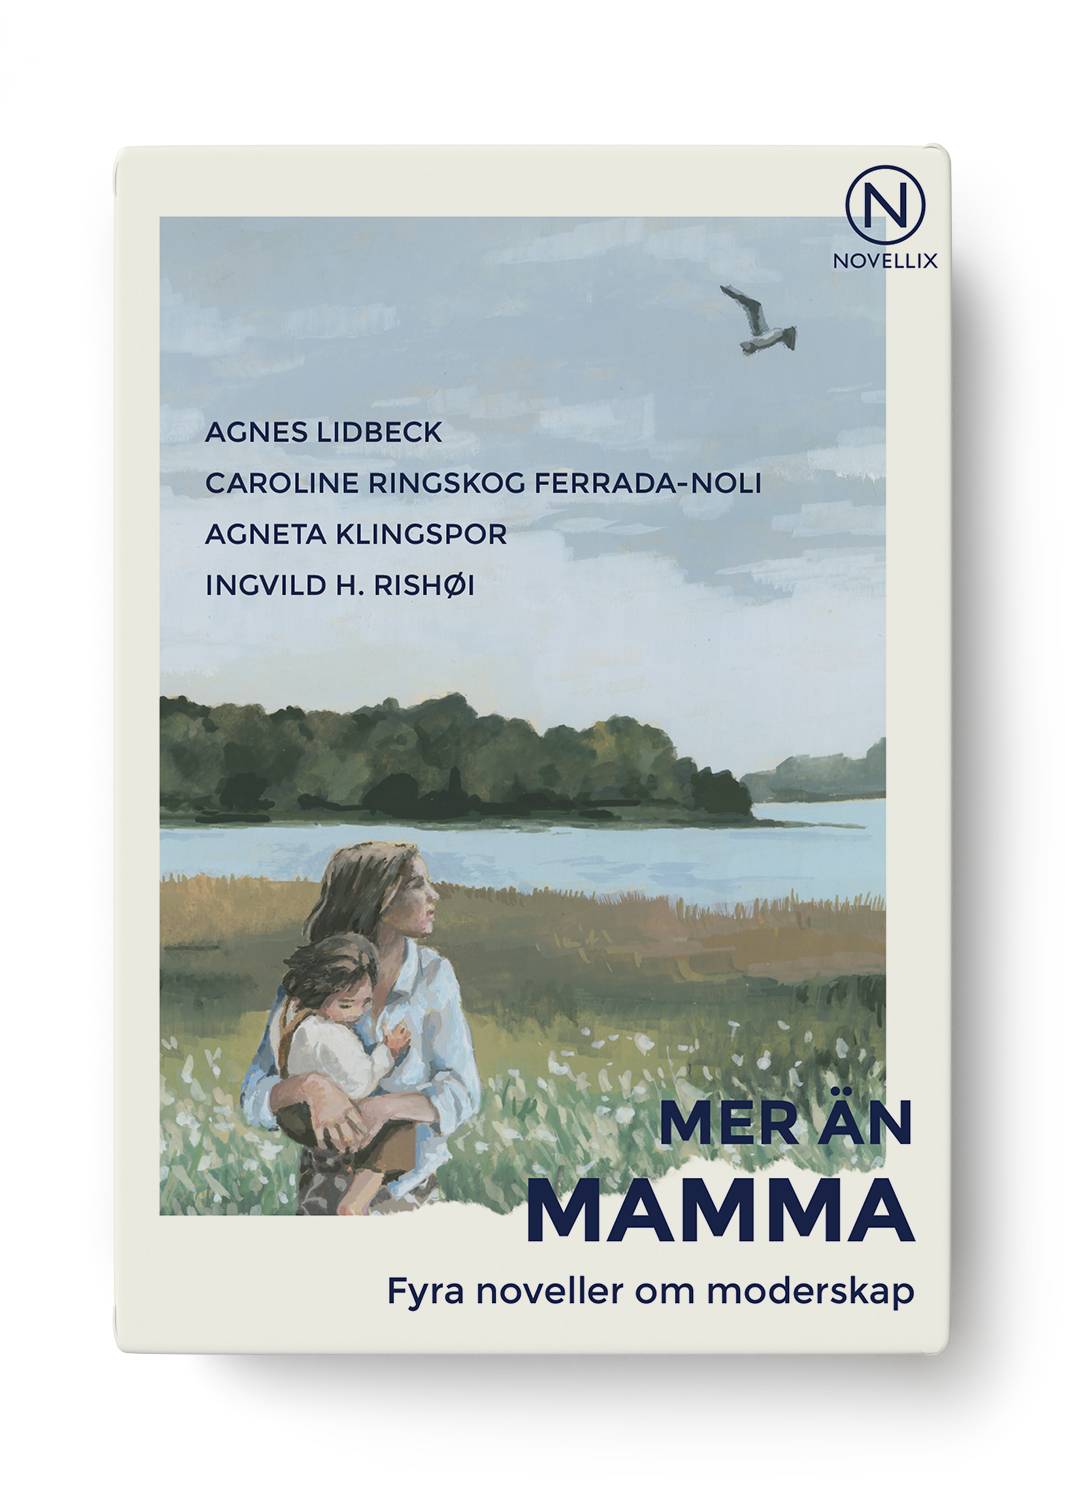 Mer än mamma - fyra noveller om moderskap